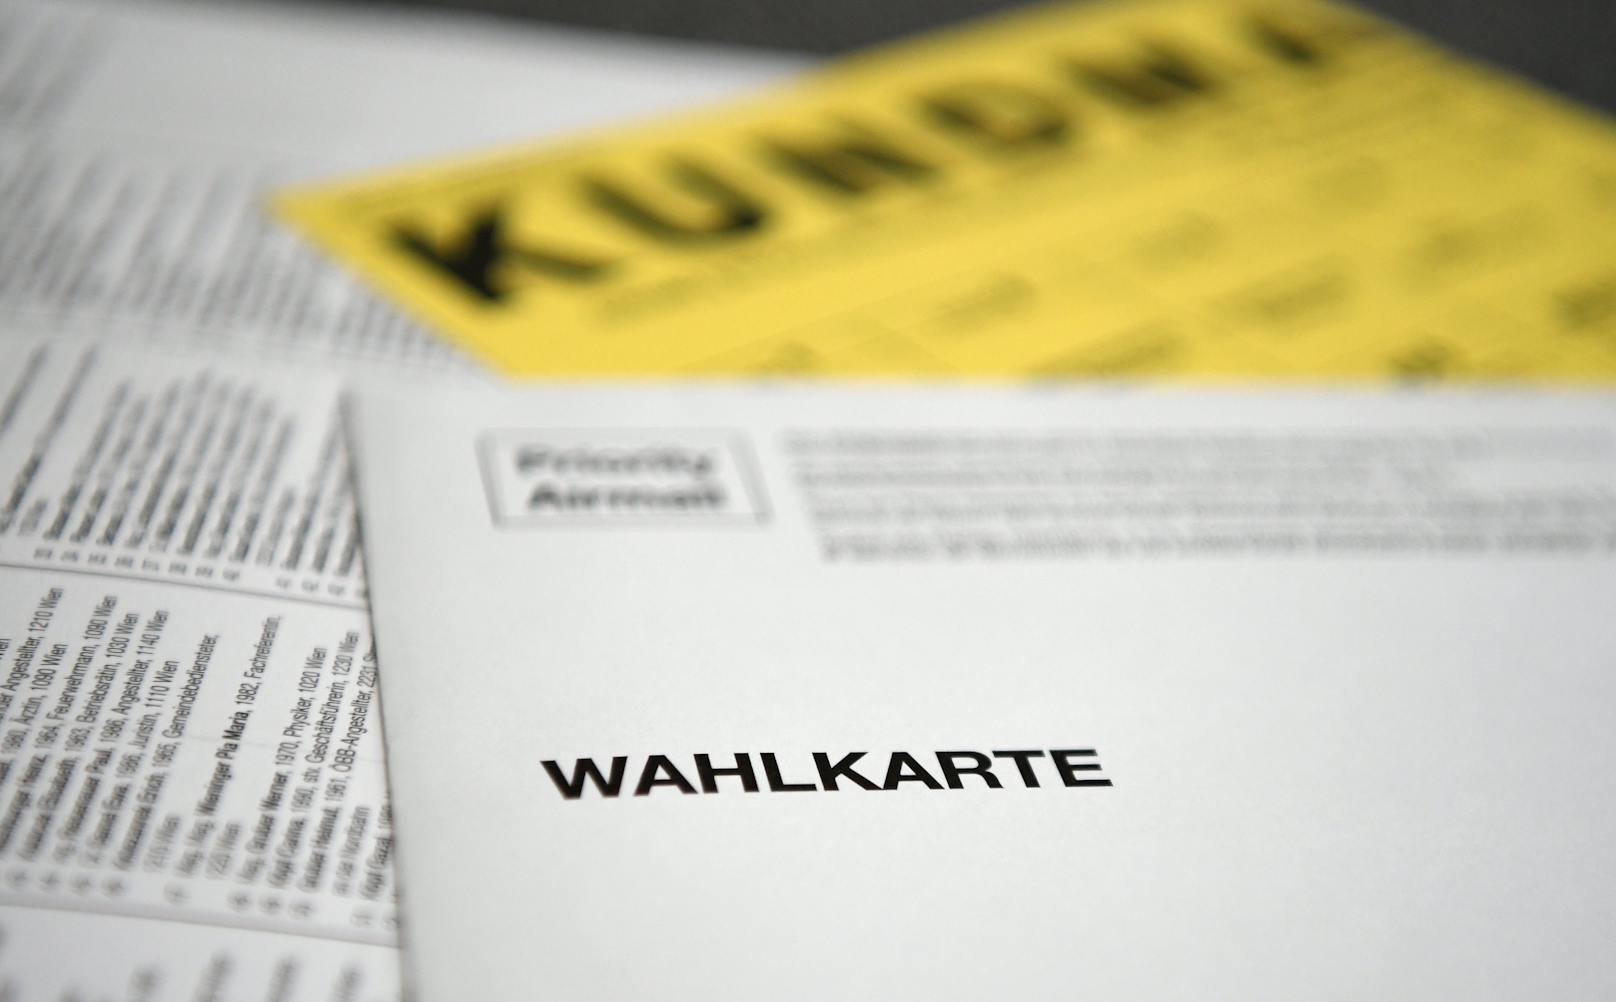 Wahlkarte Wien-Wahl